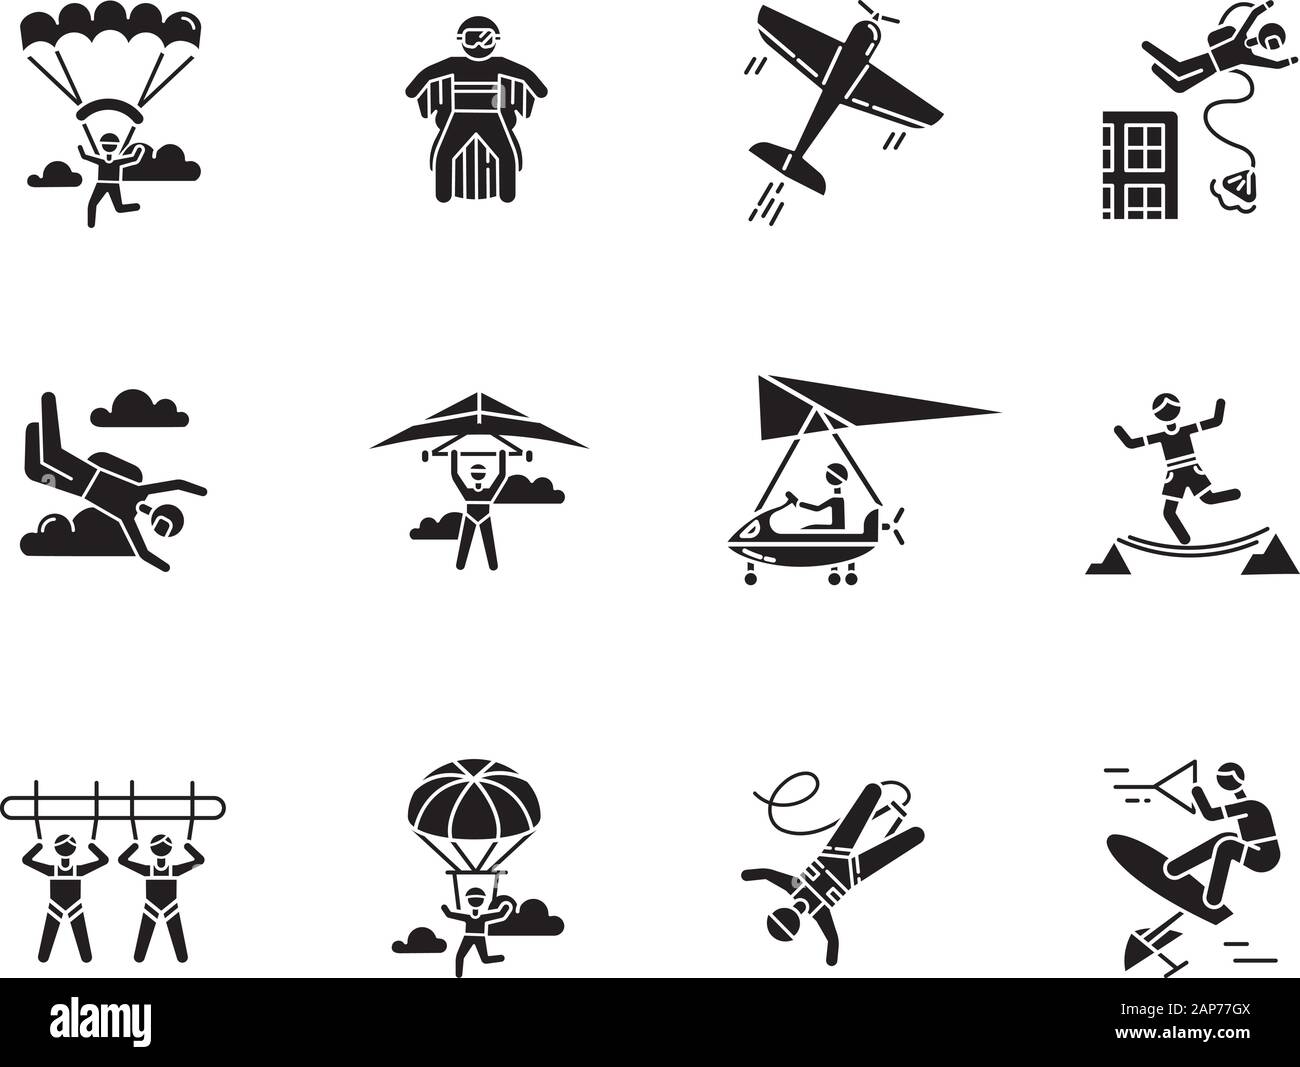 Sport extrême de l'air glyphe icons set. Le parachutisme, parachutisme, wingsuiting. Activités de plein air. Le parapente, la voltige aérienne et le saut. Ent l'adrénaline Illustration de Vecteur